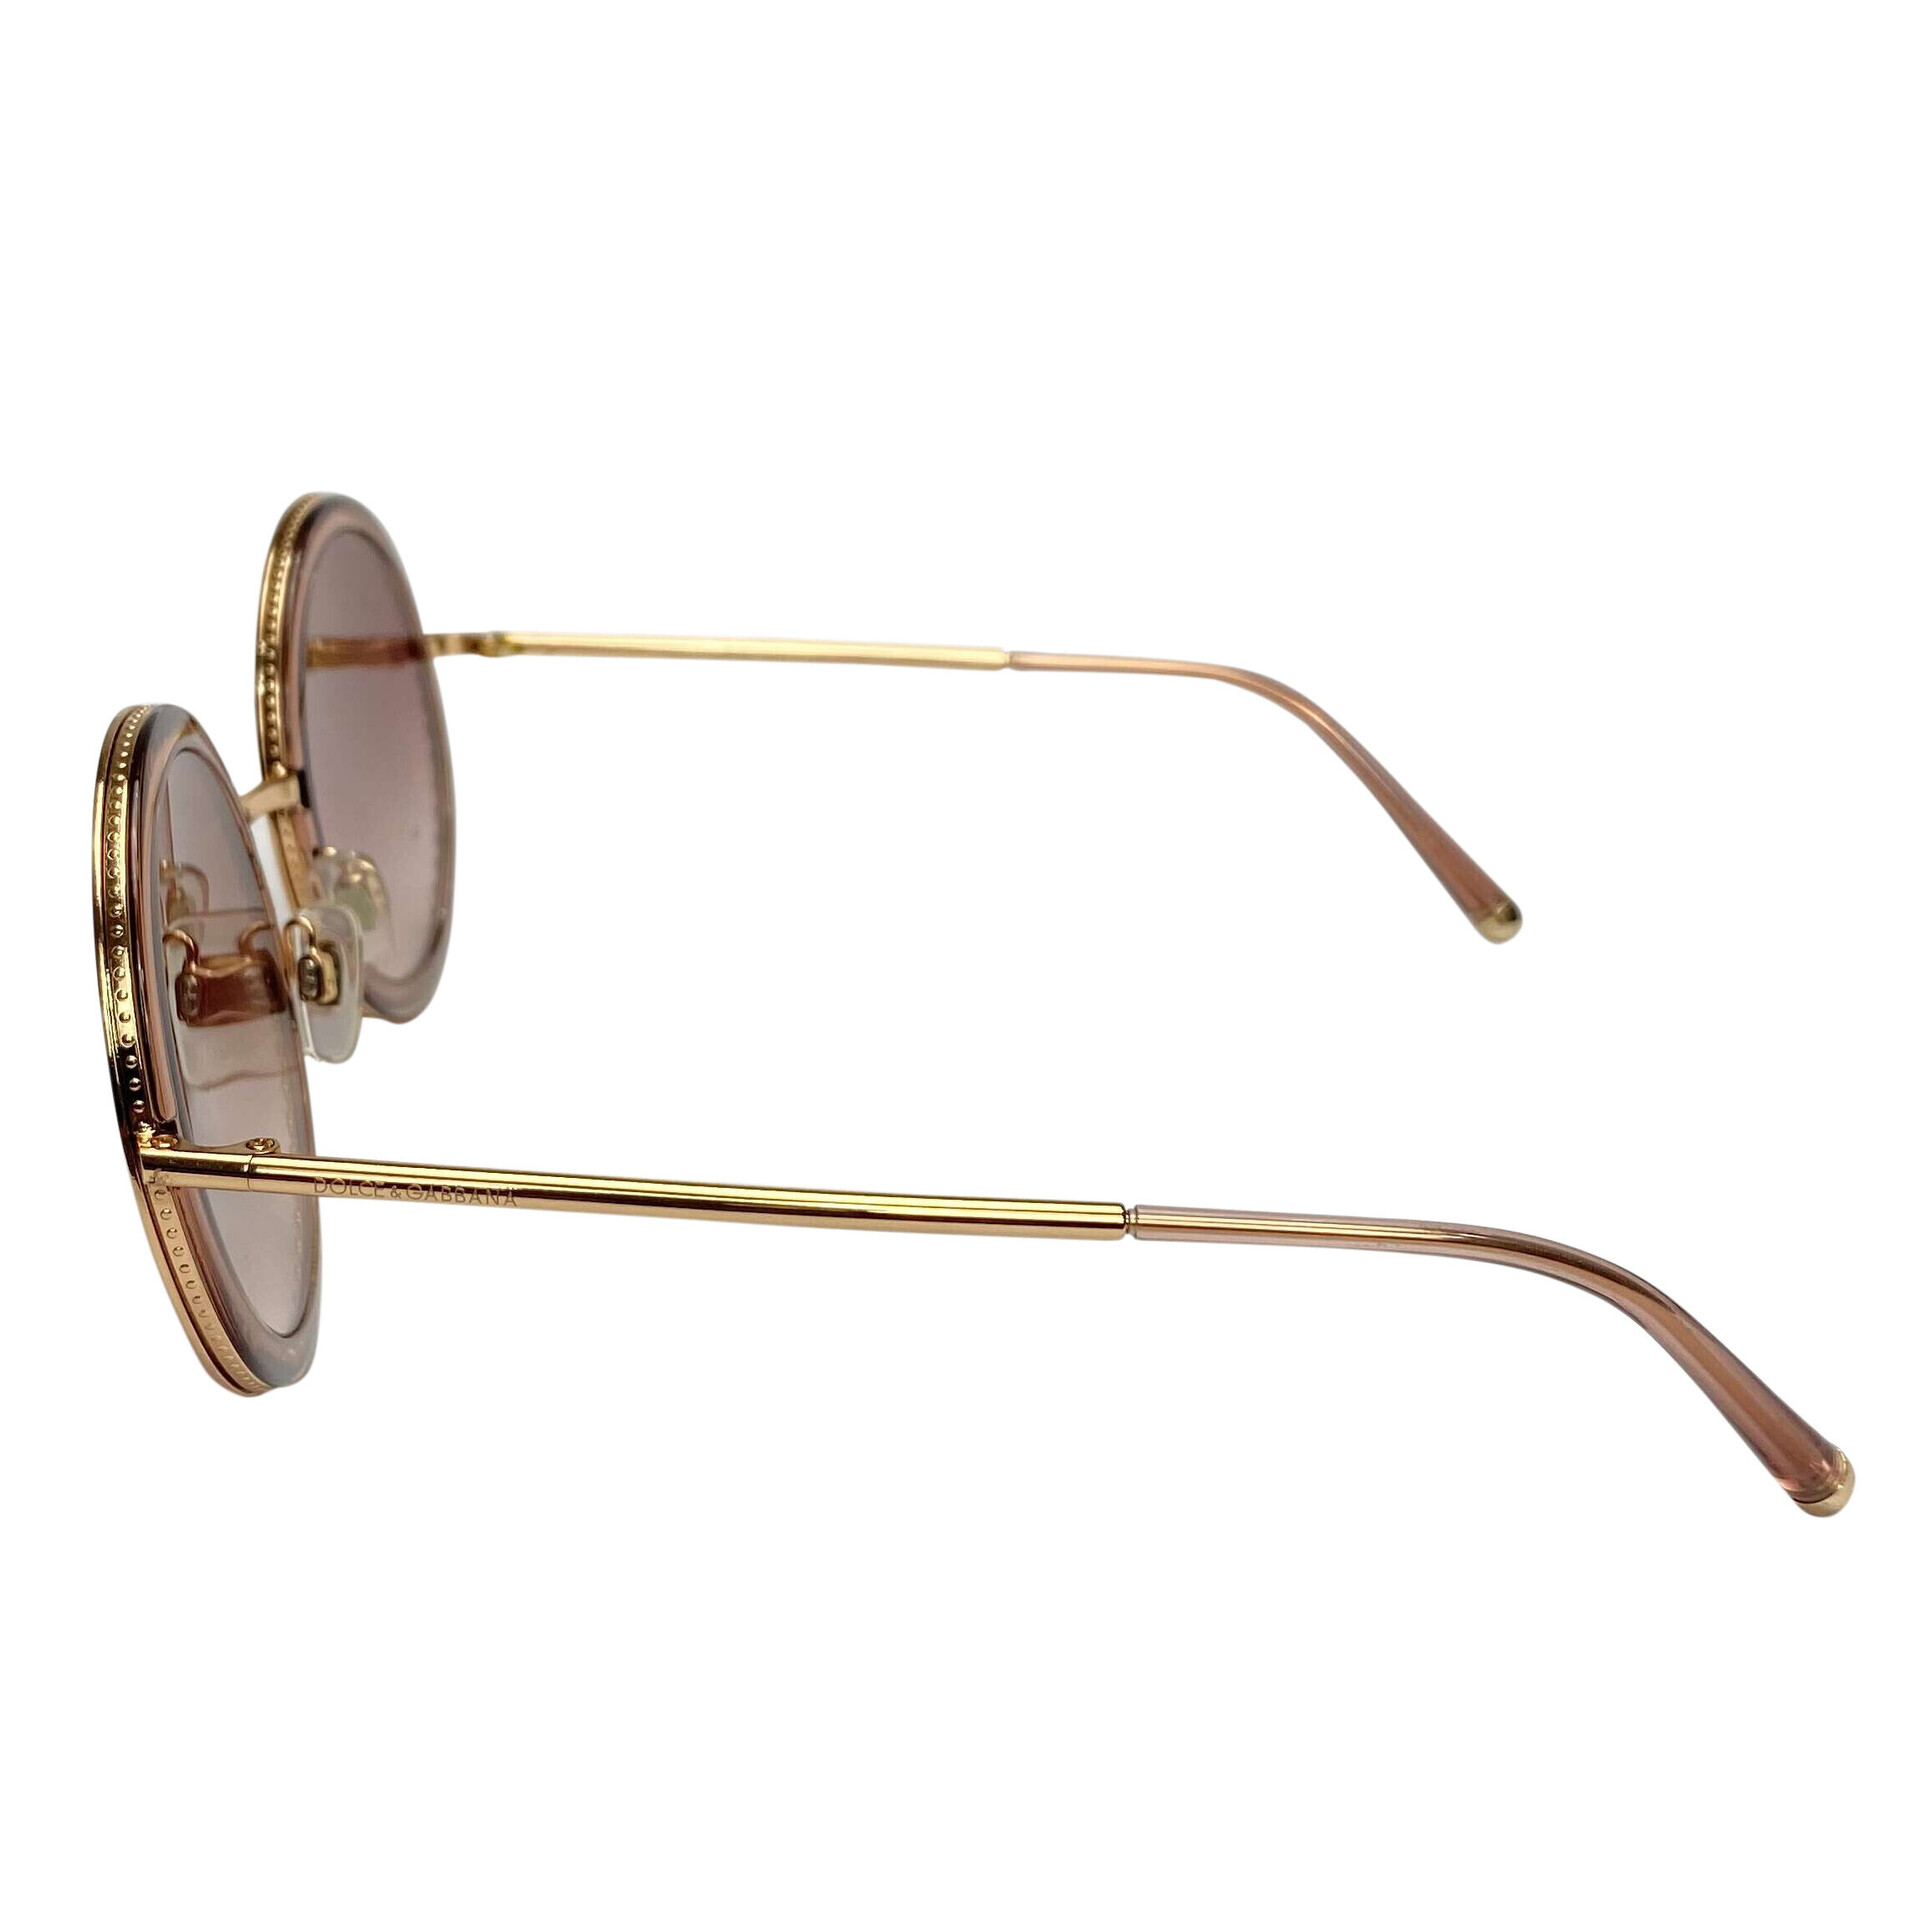 Óculos de Sol Dolce & Gabbana - 2211 0213